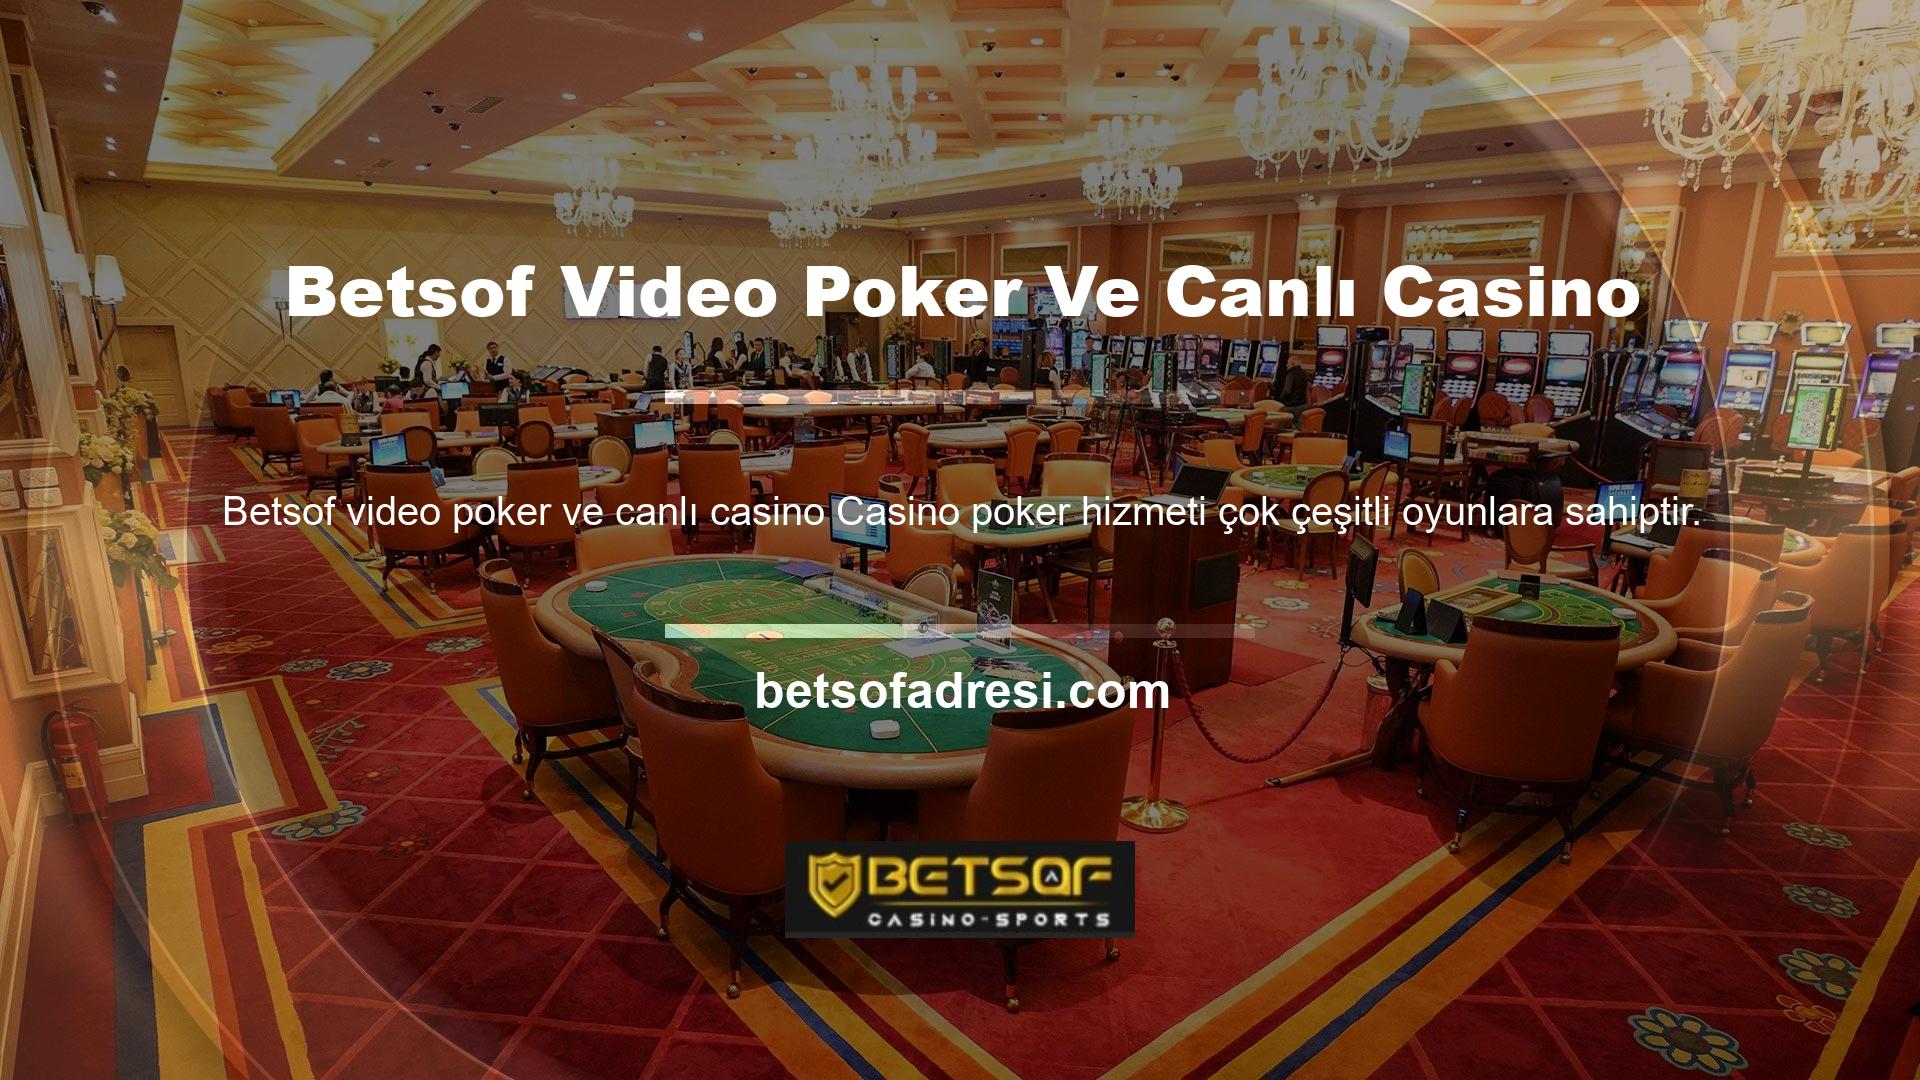 Play Poker hizmeti, poker oyunları oynamanın iki yolunu sunar: video ve canlı